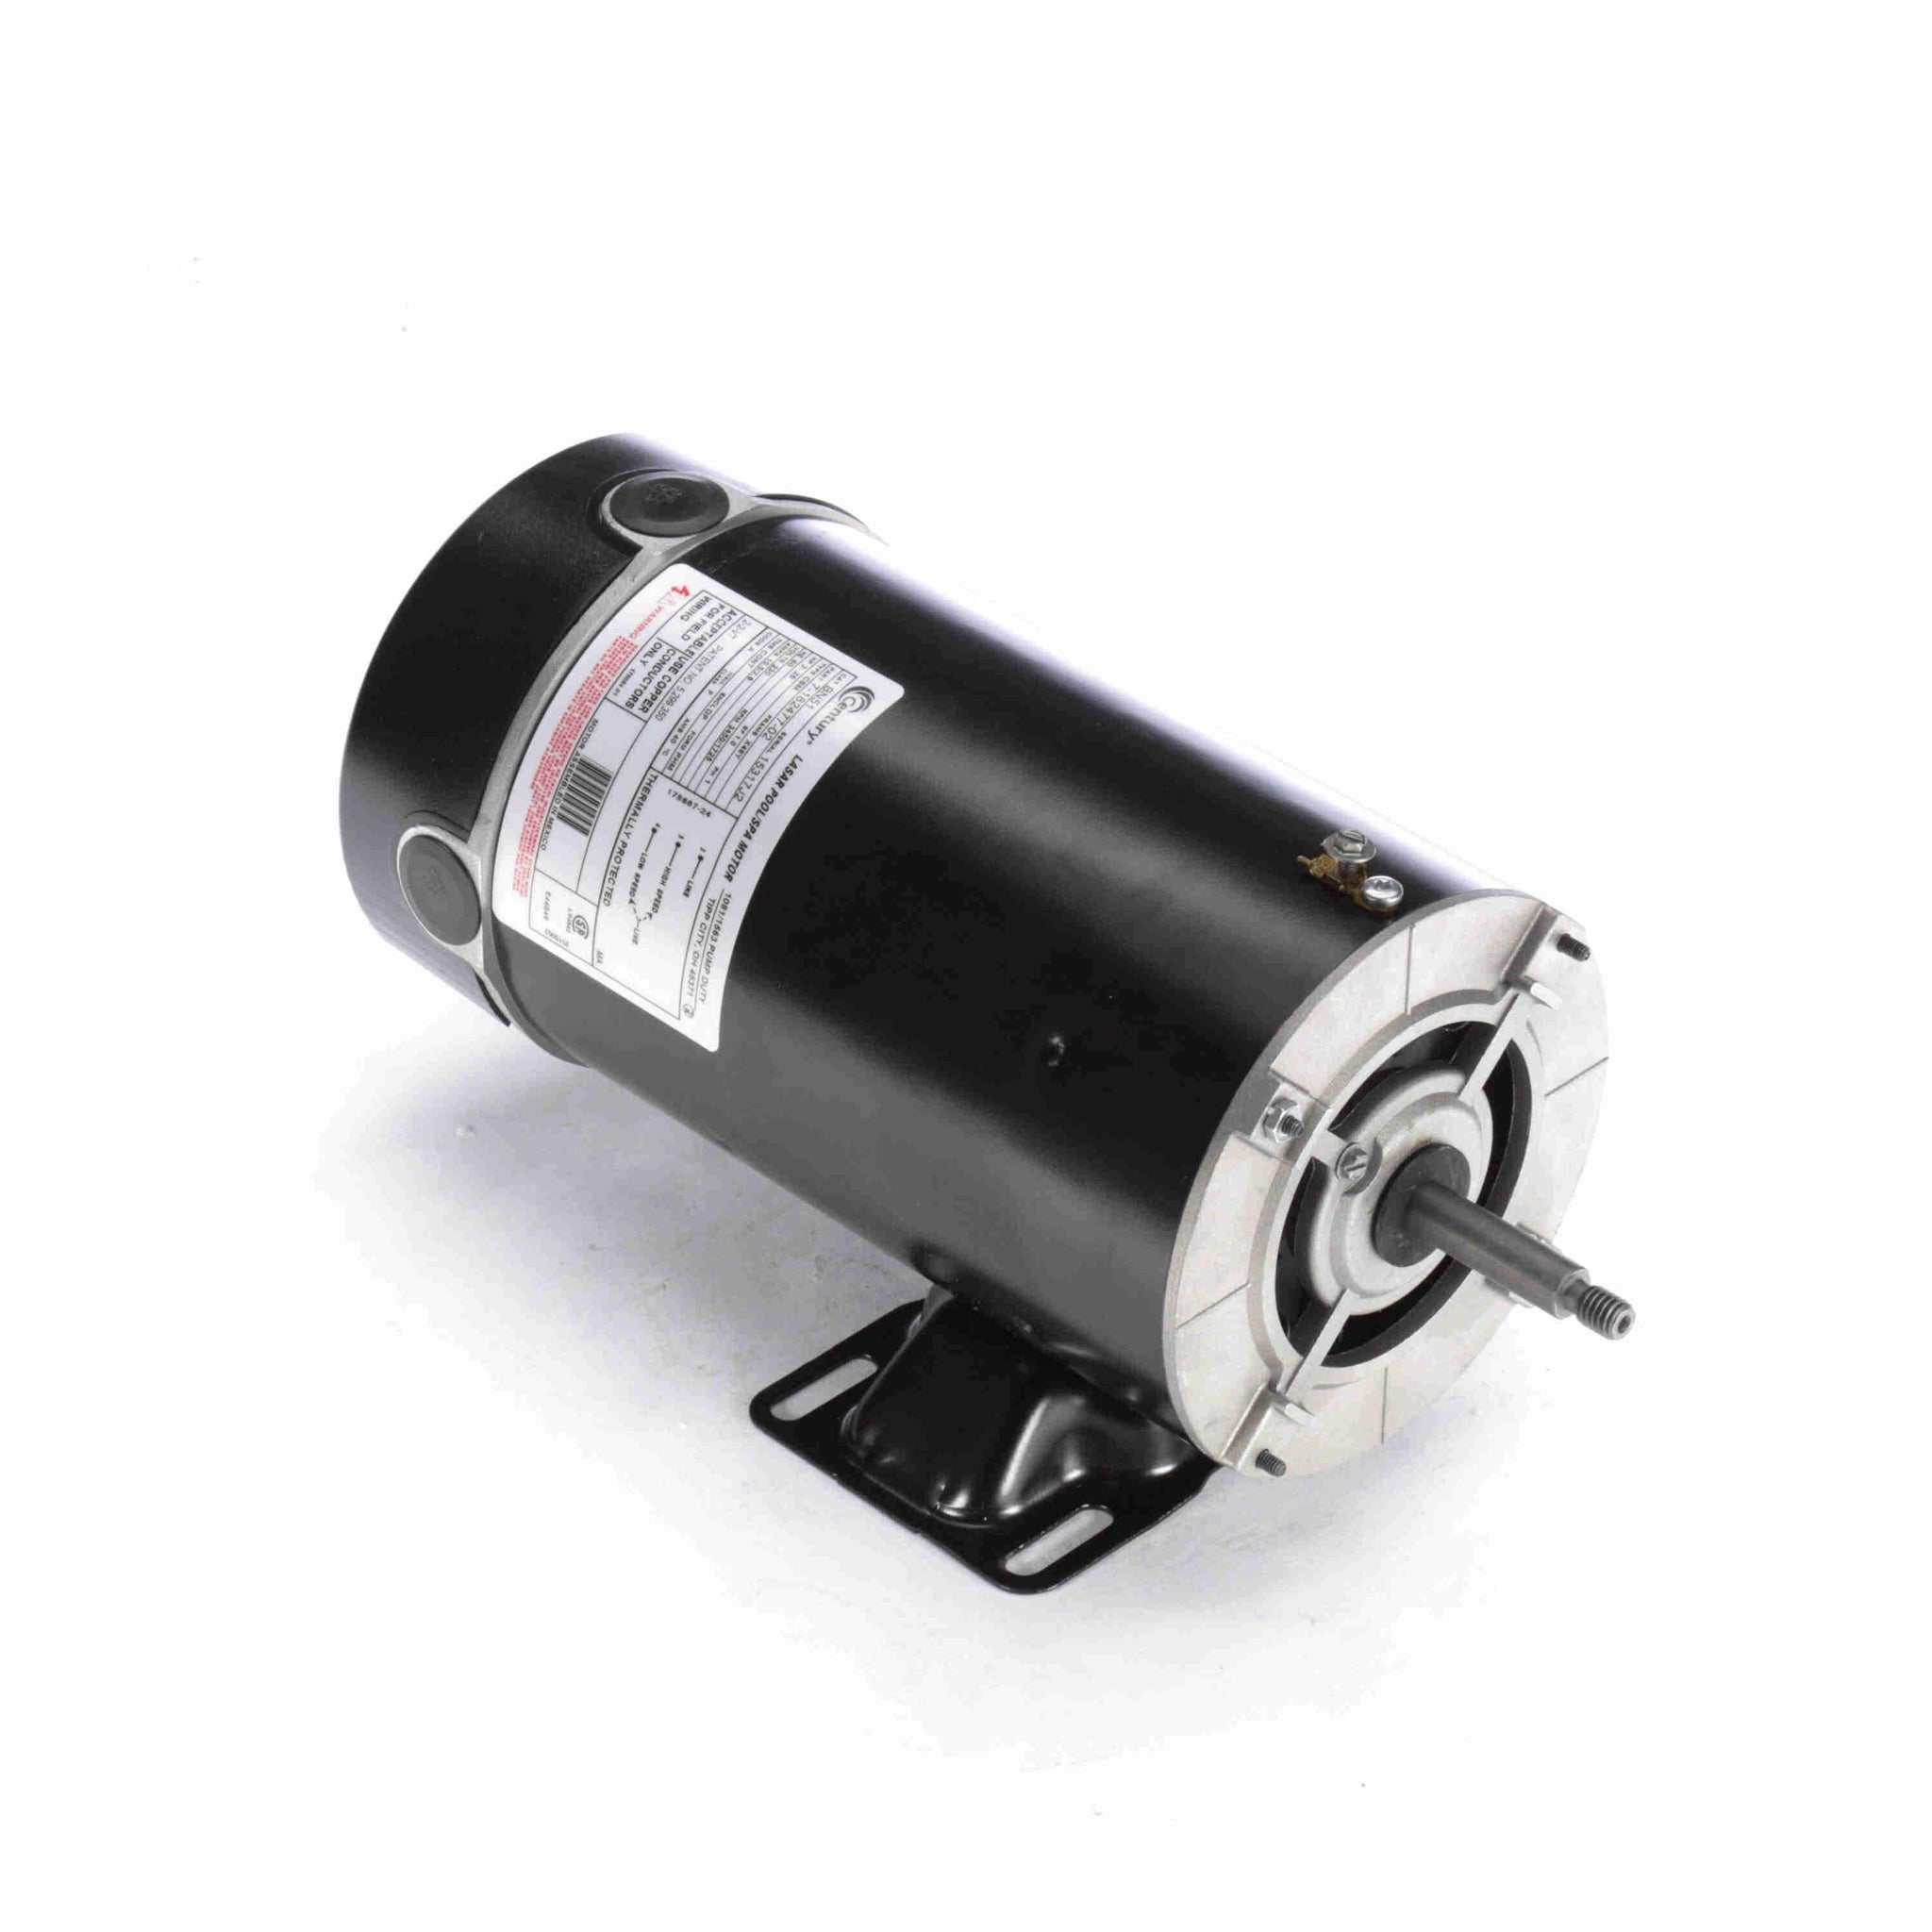 BN51 - 2-.25 HP Pool Pump Motor, 1 phase, 3600 RPM, 230 V, 48Y Frame, ODP - Hardware & Moreee